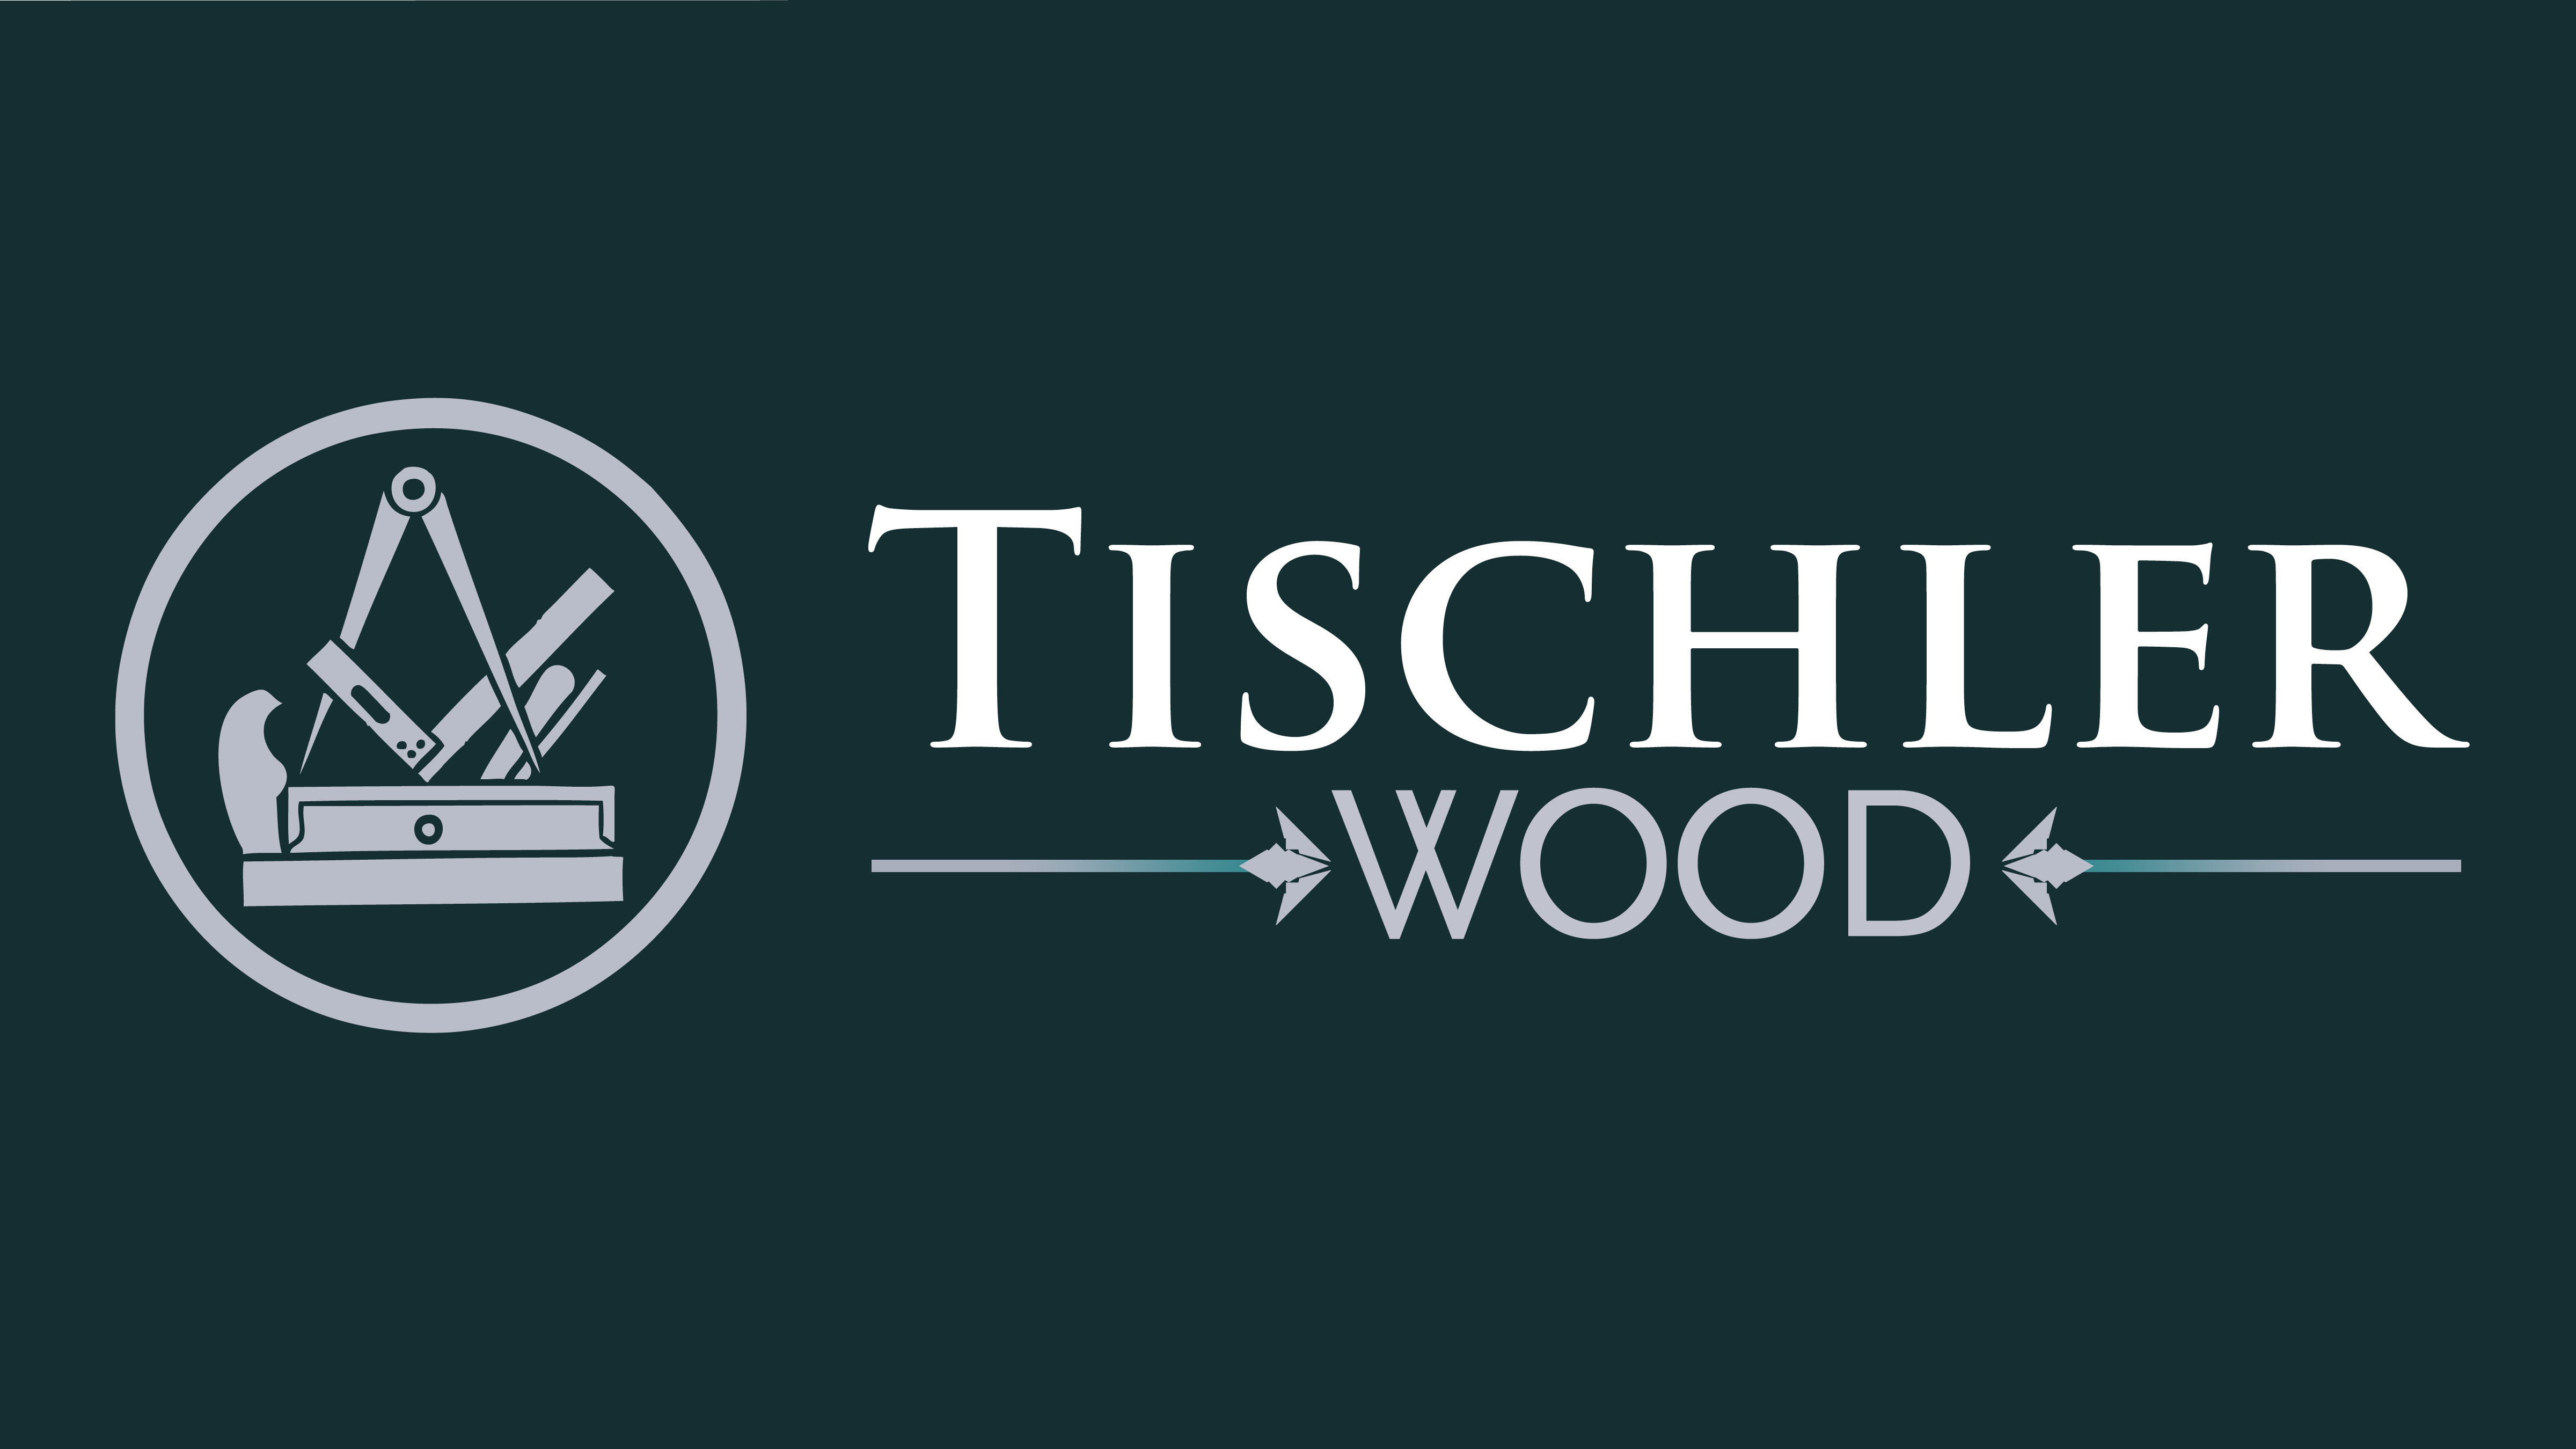 Tischler Wood